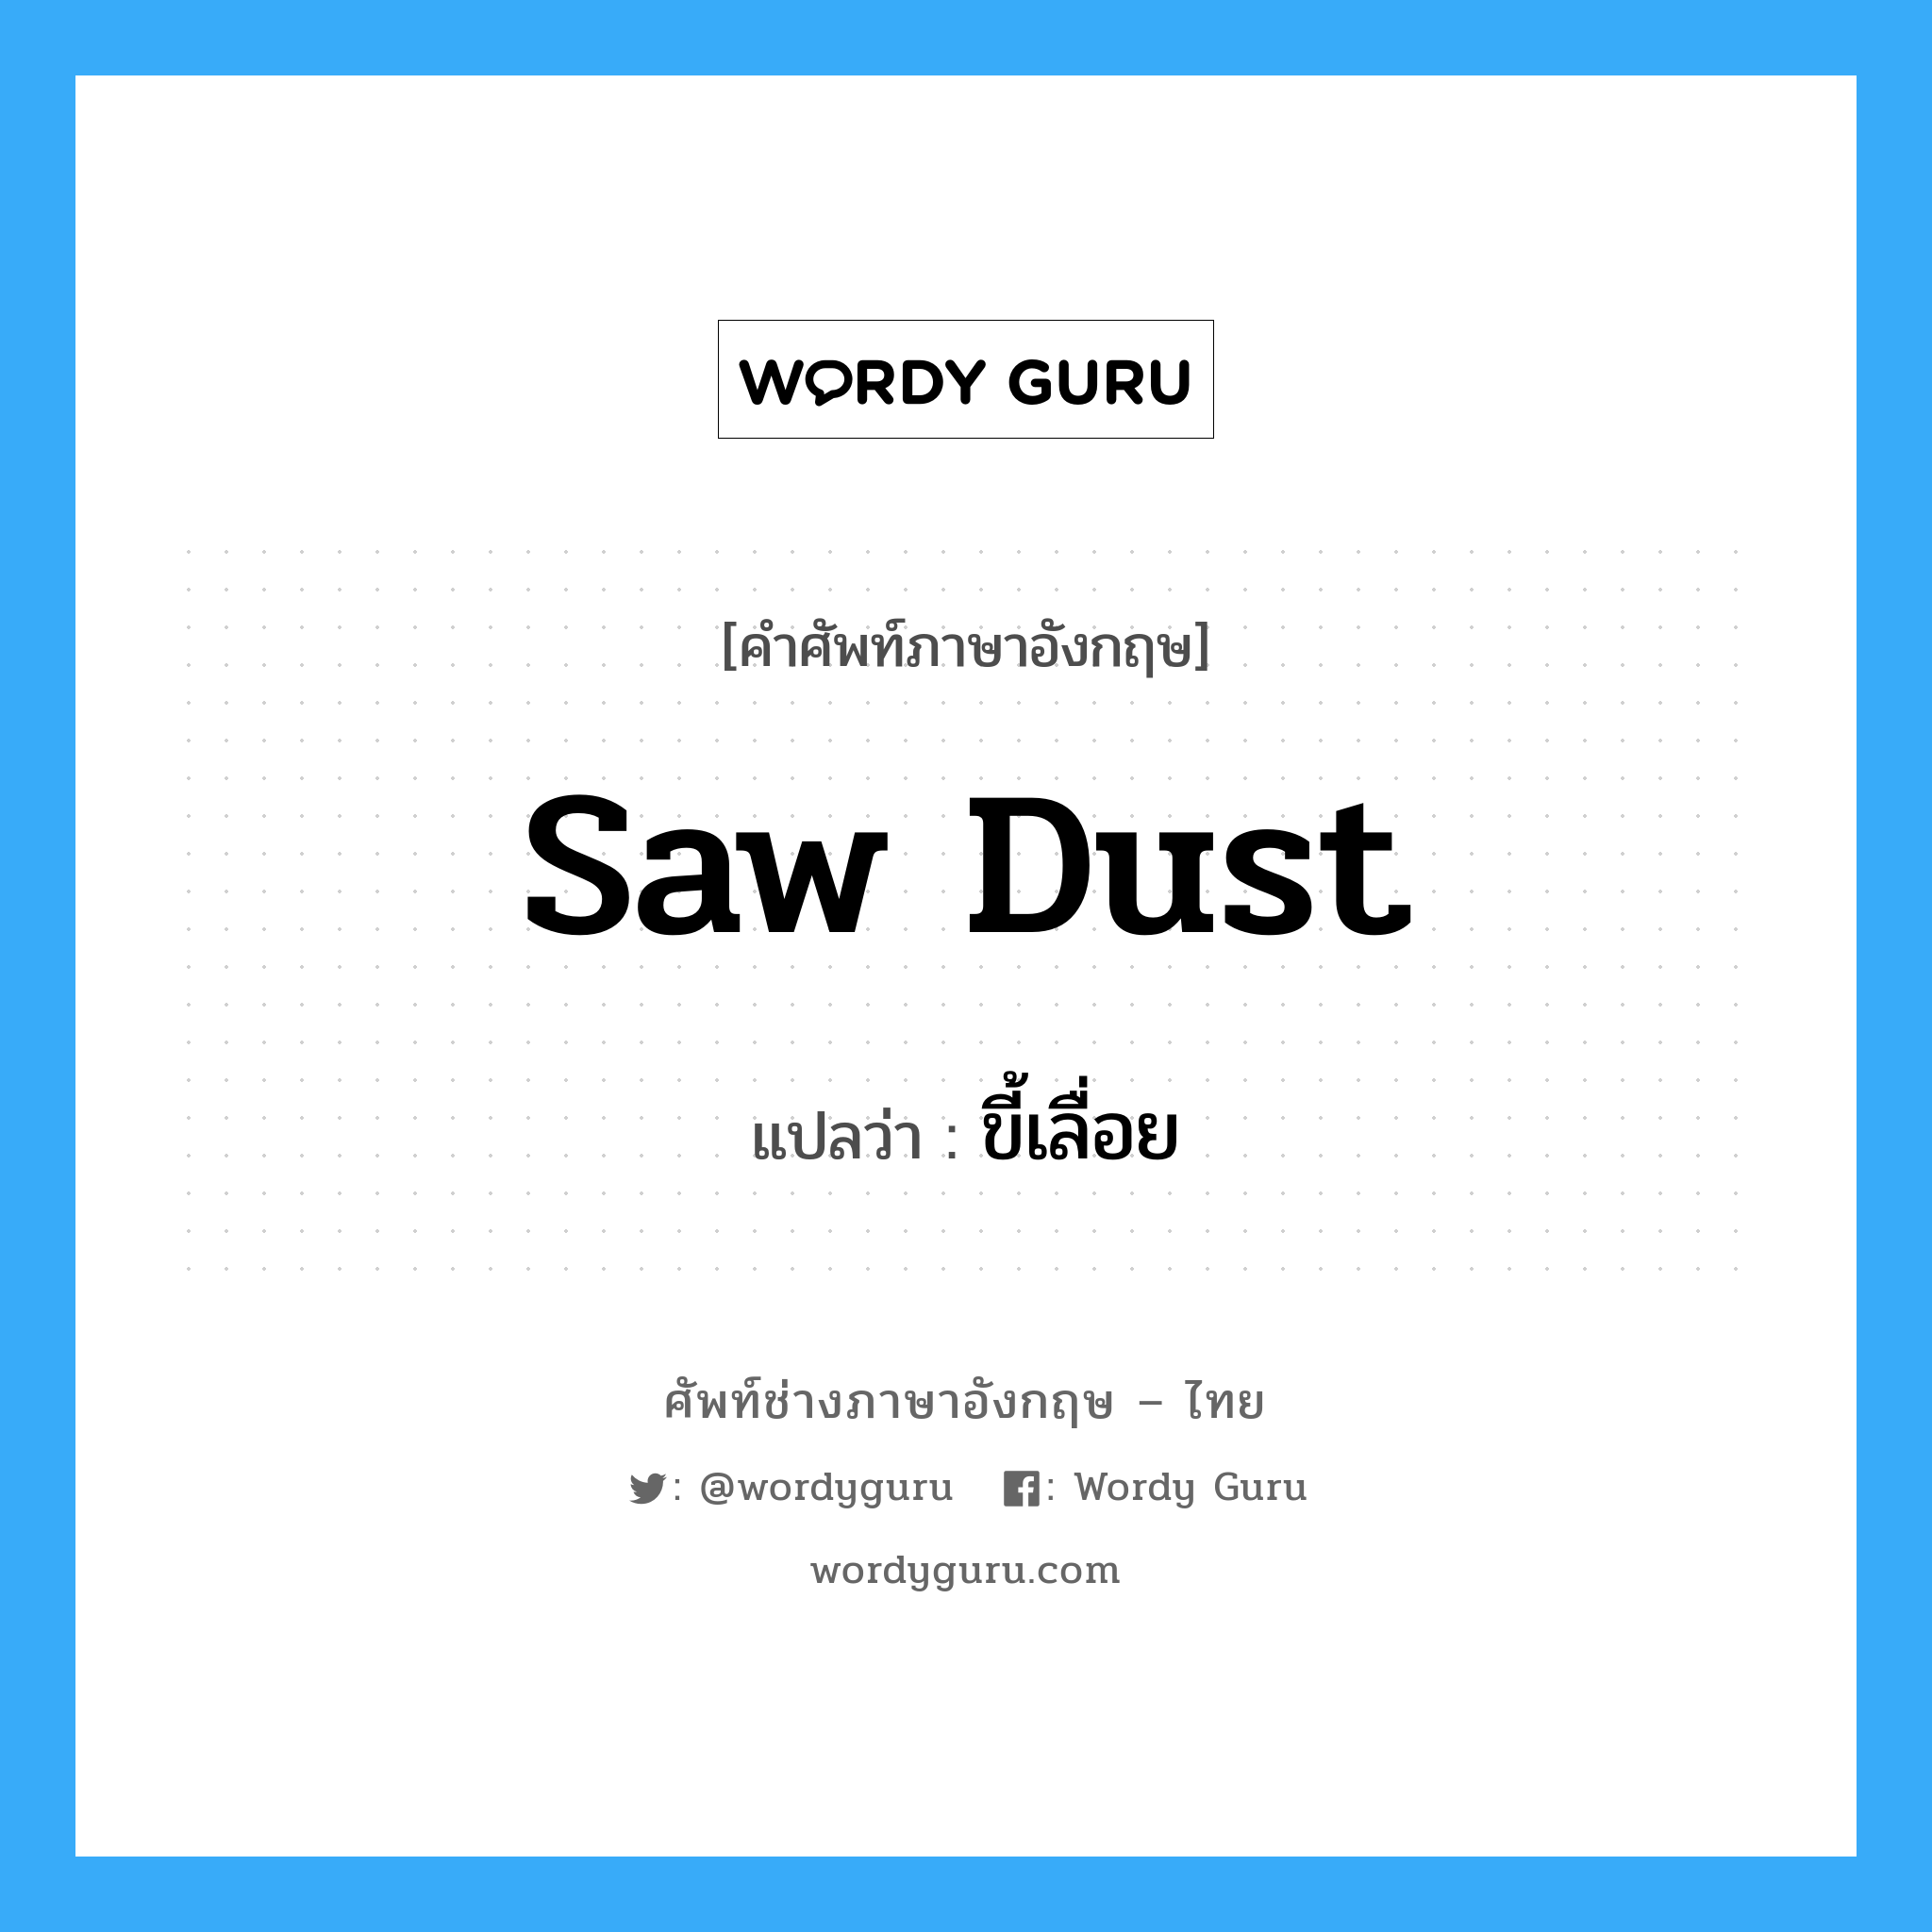 ขี้เลื่อย ภาษาอังกฤษ?, คำศัพท์ช่างภาษาอังกฤษ - ไทย ขี้เลื่อย คำศัพท์ภาษาอังกฤษ ขี้เลื่อย แปลว่า saw dust